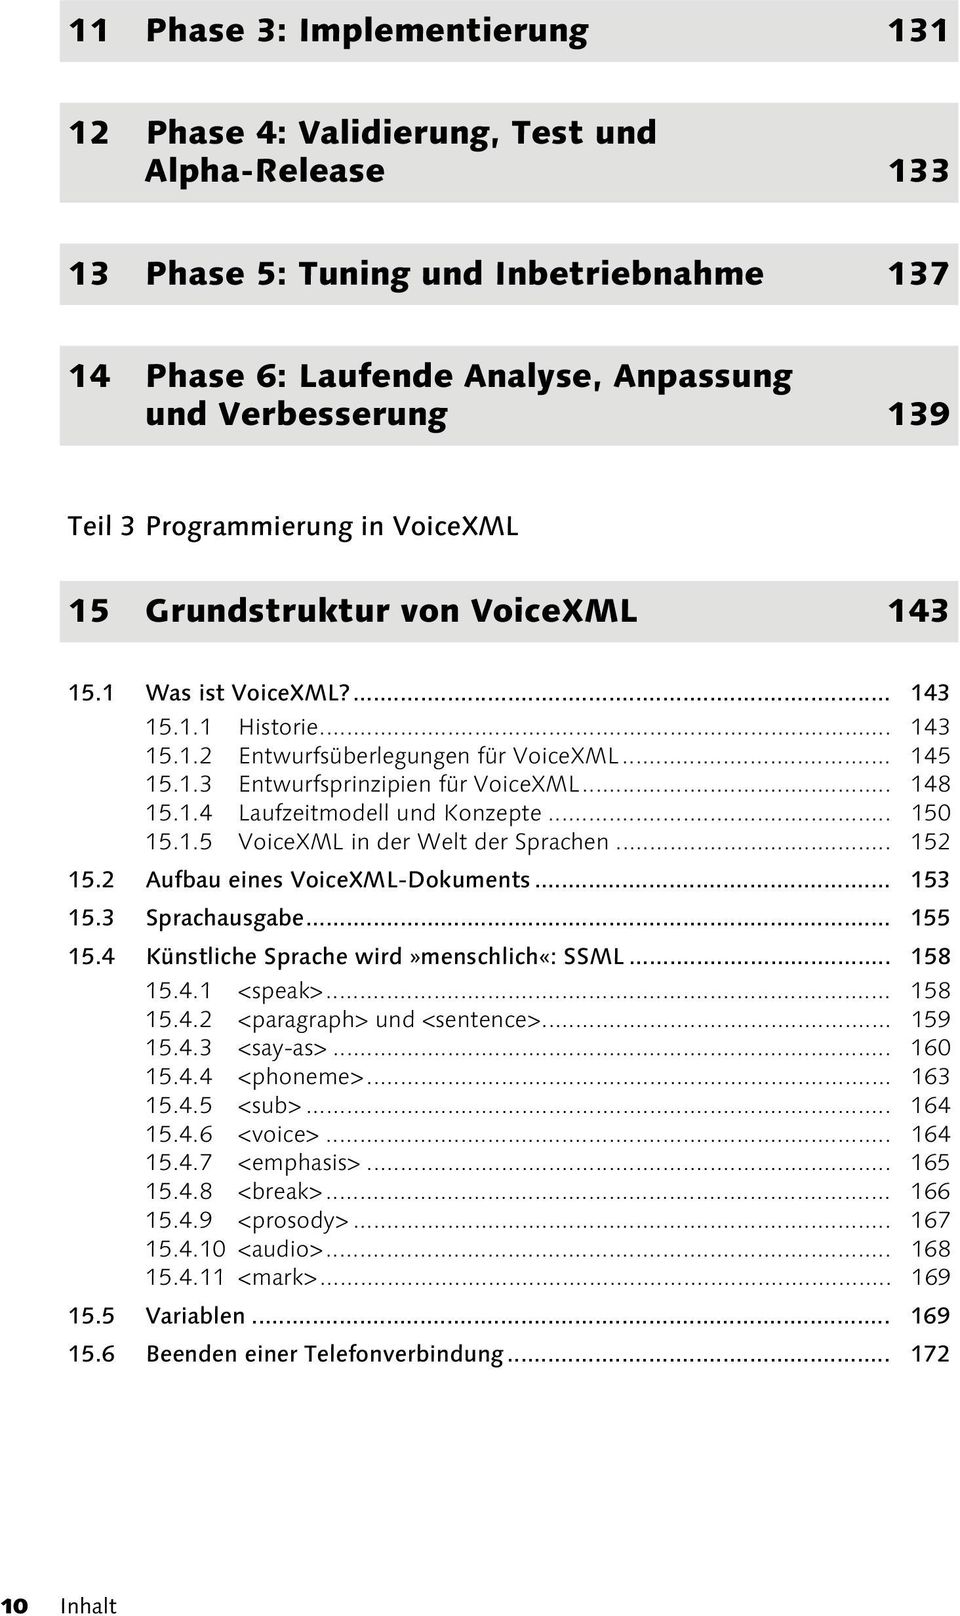 .. 148 15.1.4 Laufzeitmodell und Konzepte... 150 15.1.5 VoiceXML in der Welt der Sprachen... 152 15.2 Aufbau eines VoiceXML-Dokuments... 153 15.3 Sprachausgabe... 155 15.